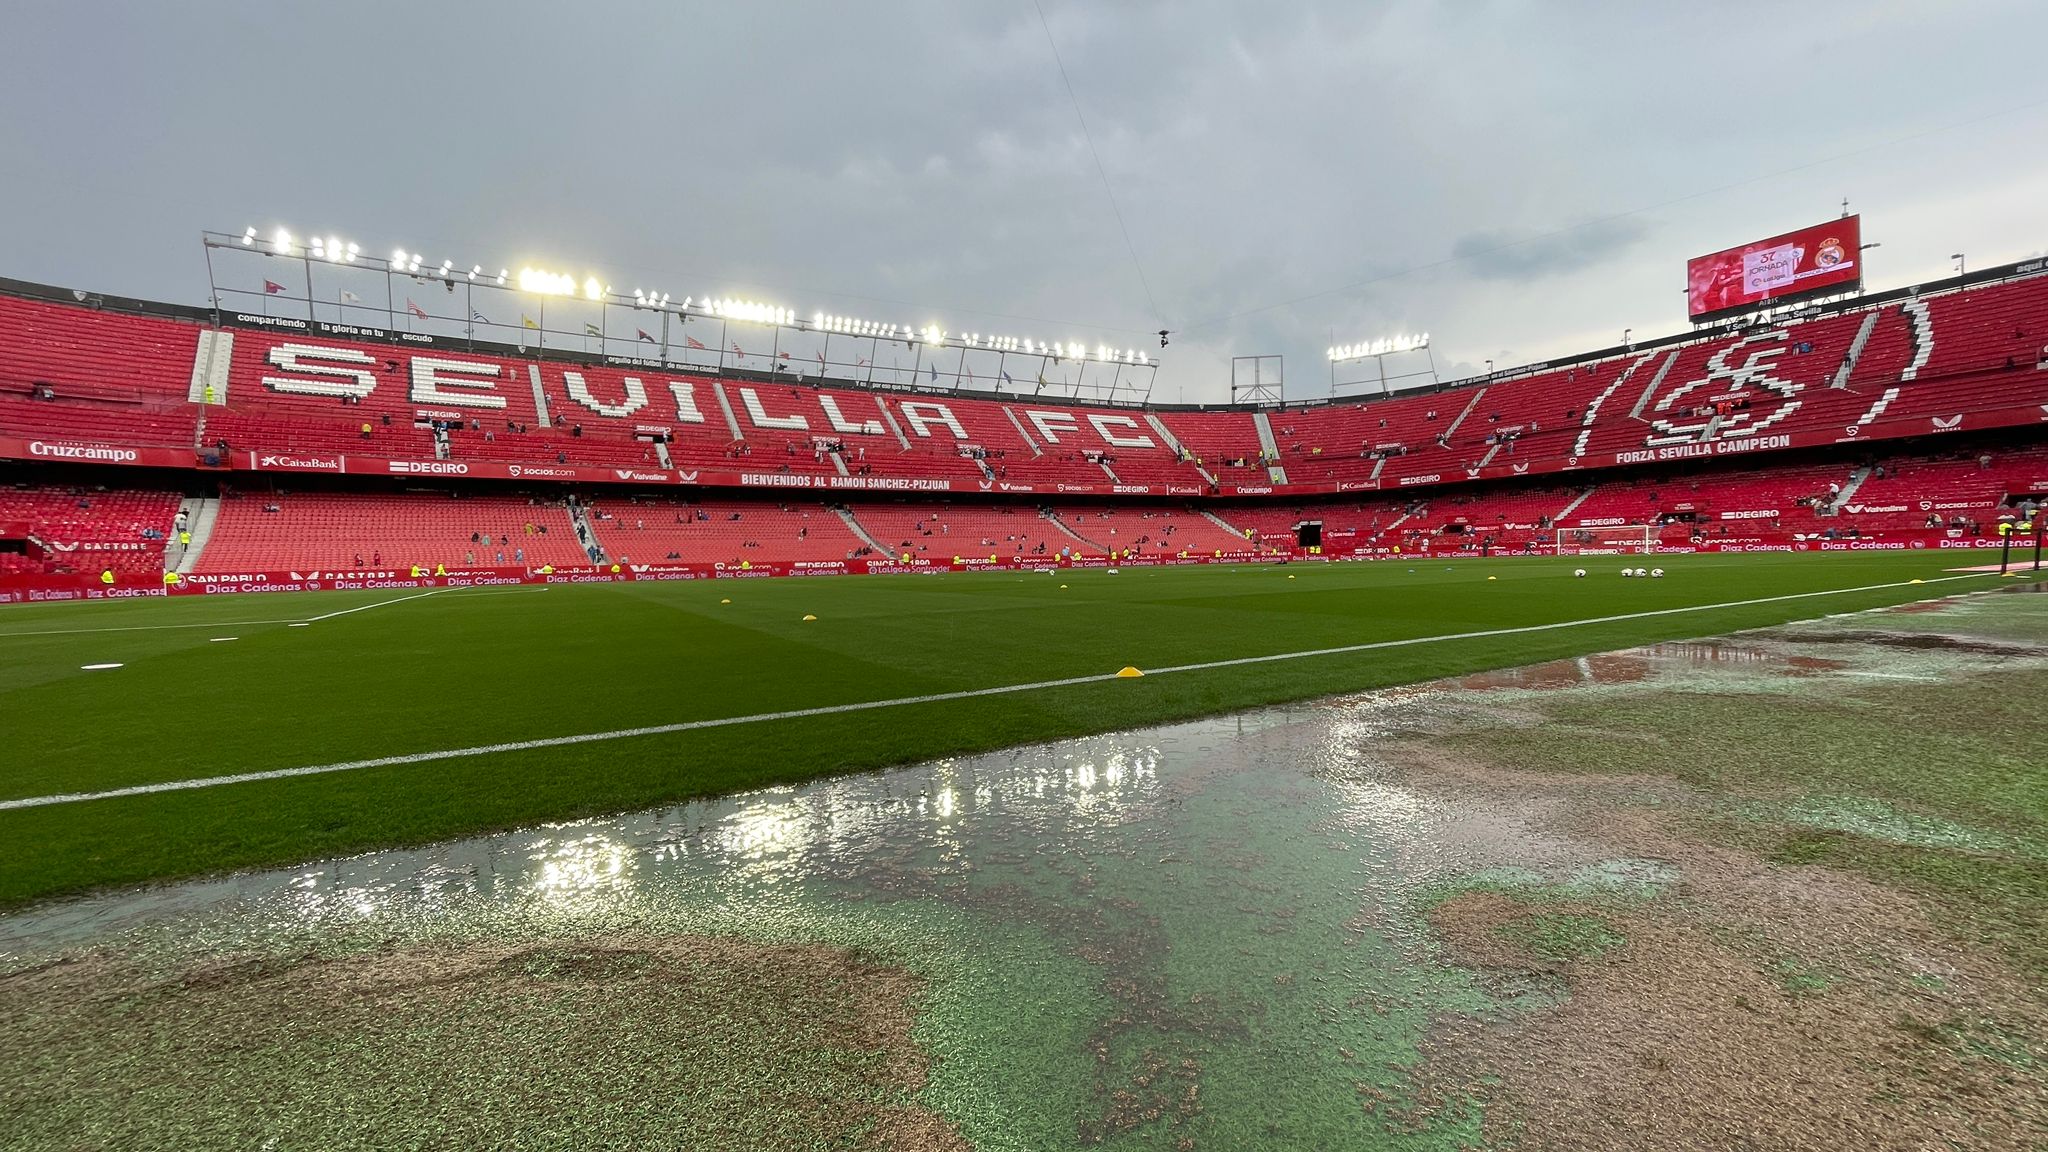 El estadio del Sevilla, tras la lluvia caída (Foto: Kiko Hurtado).